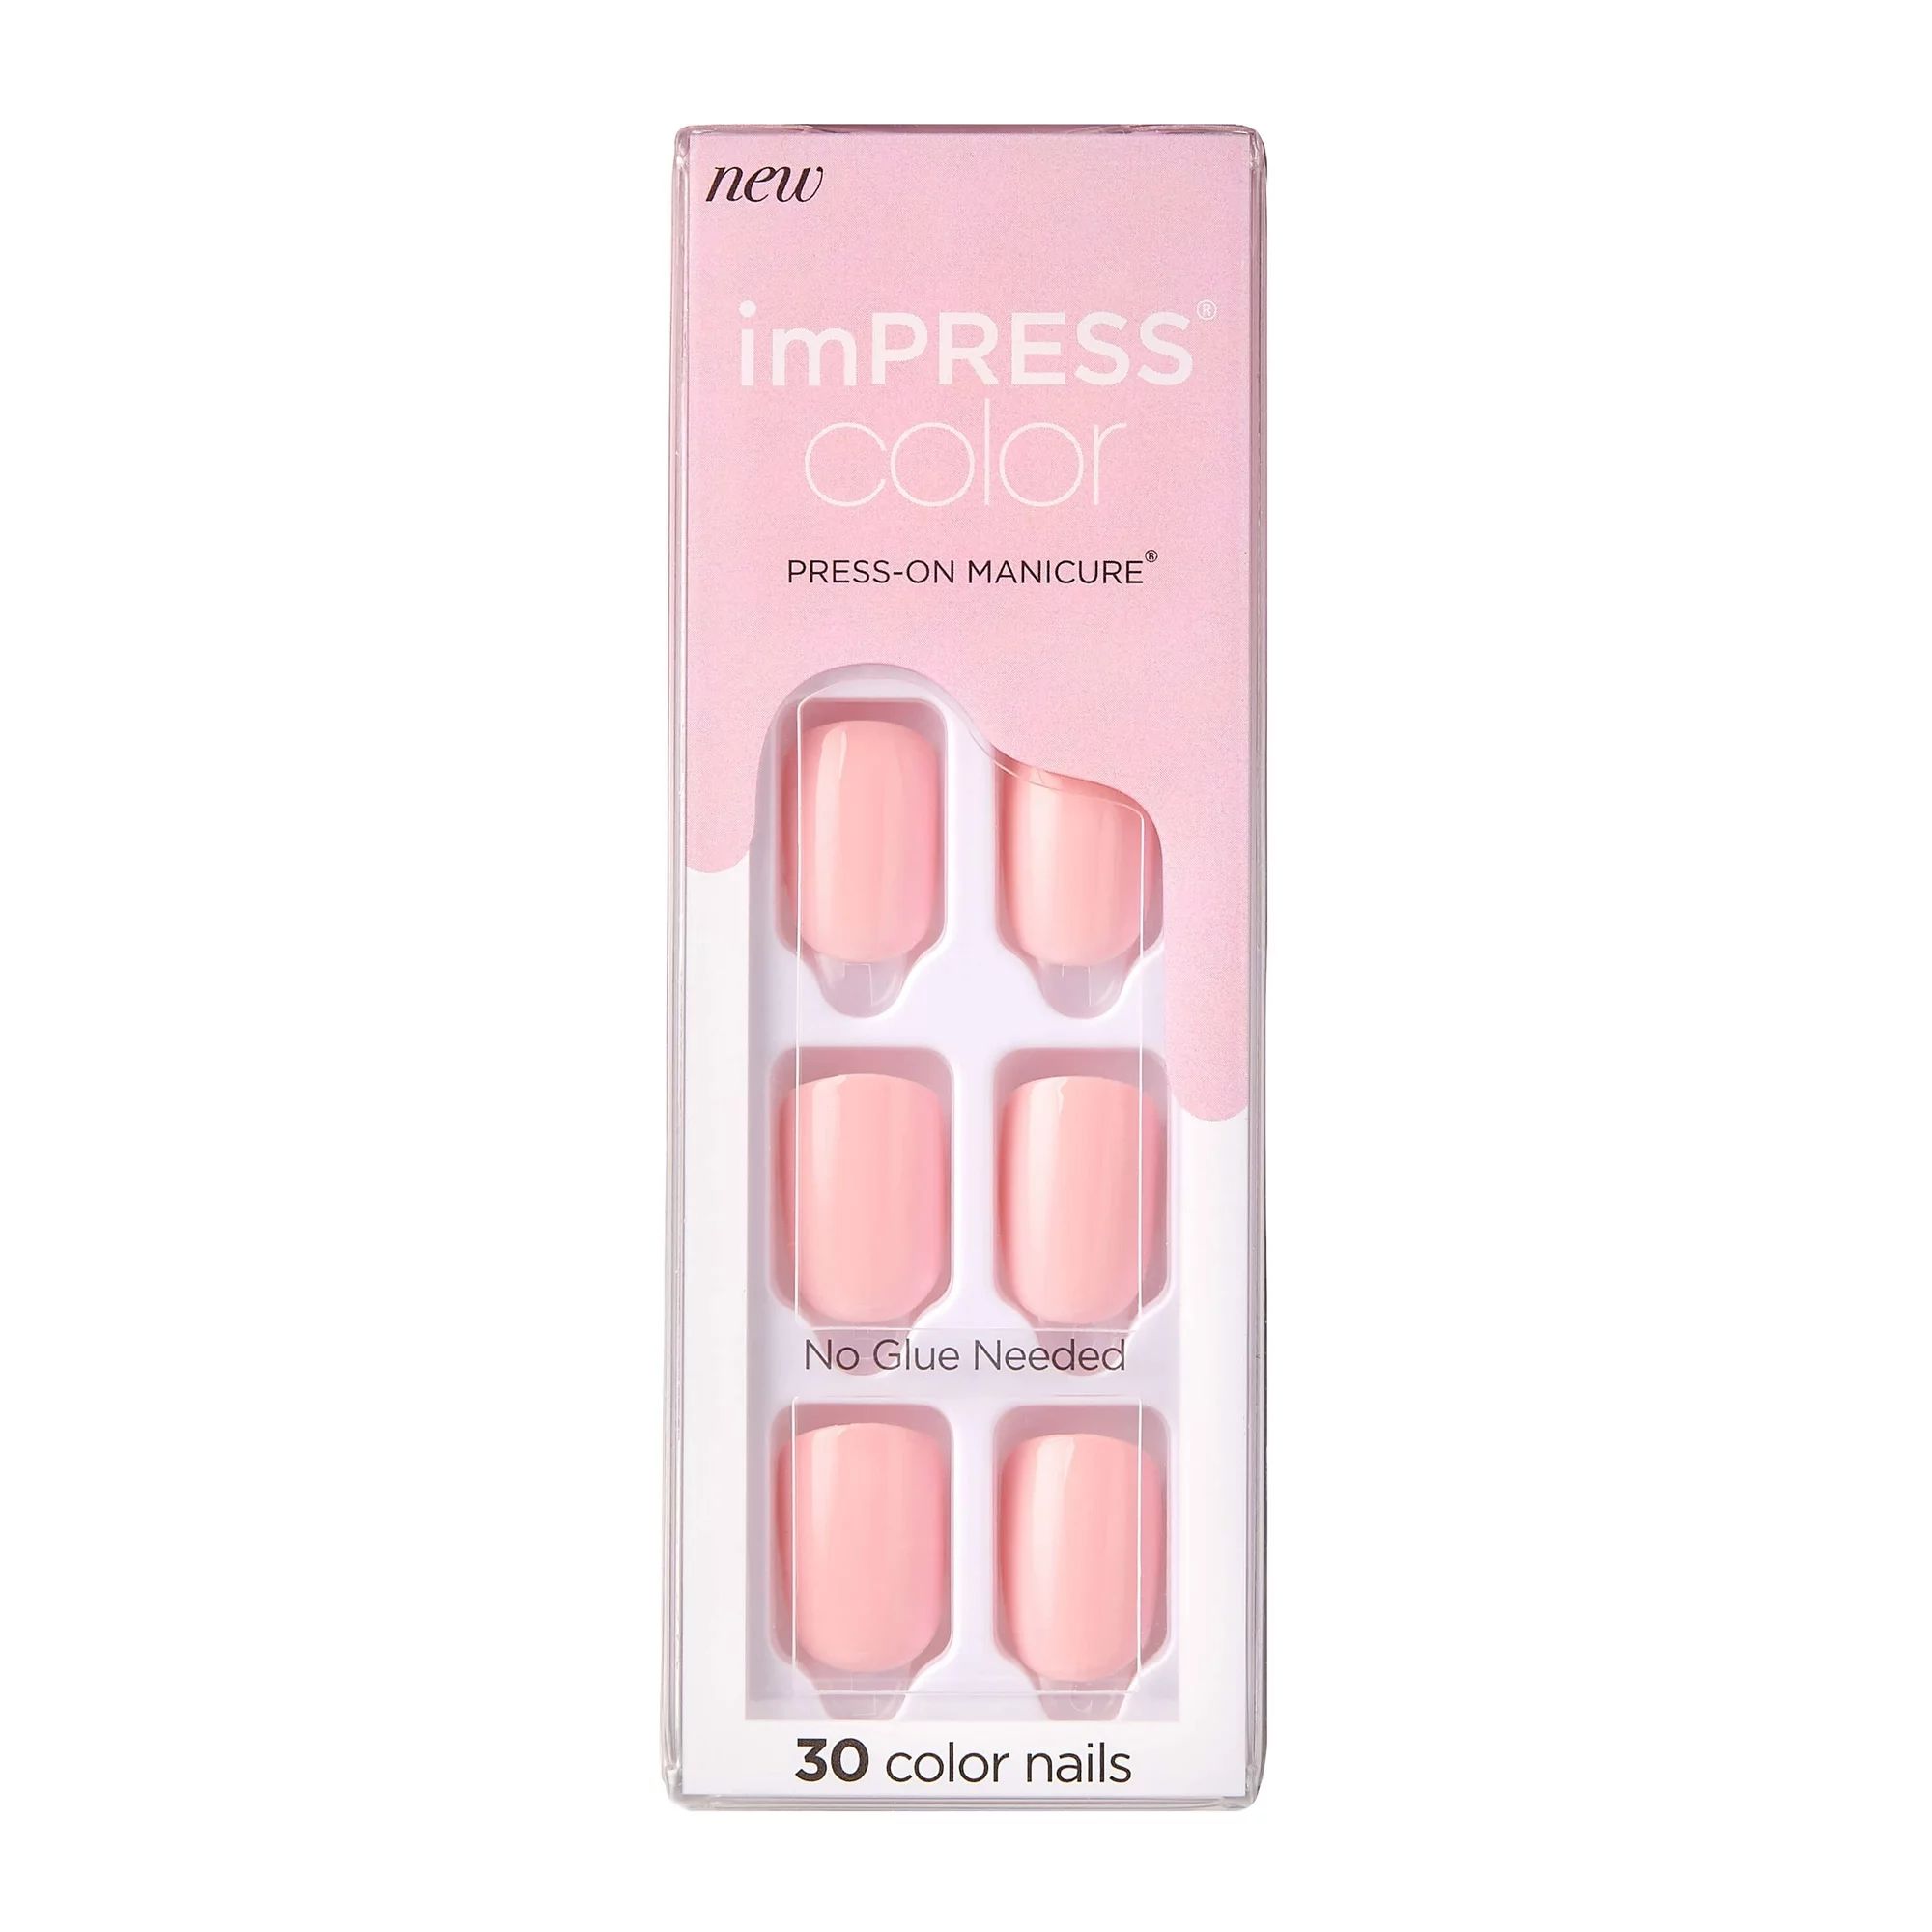 imPRESS Color Press-on Manicure, Pick Me Pink, Short | Walmart (US)